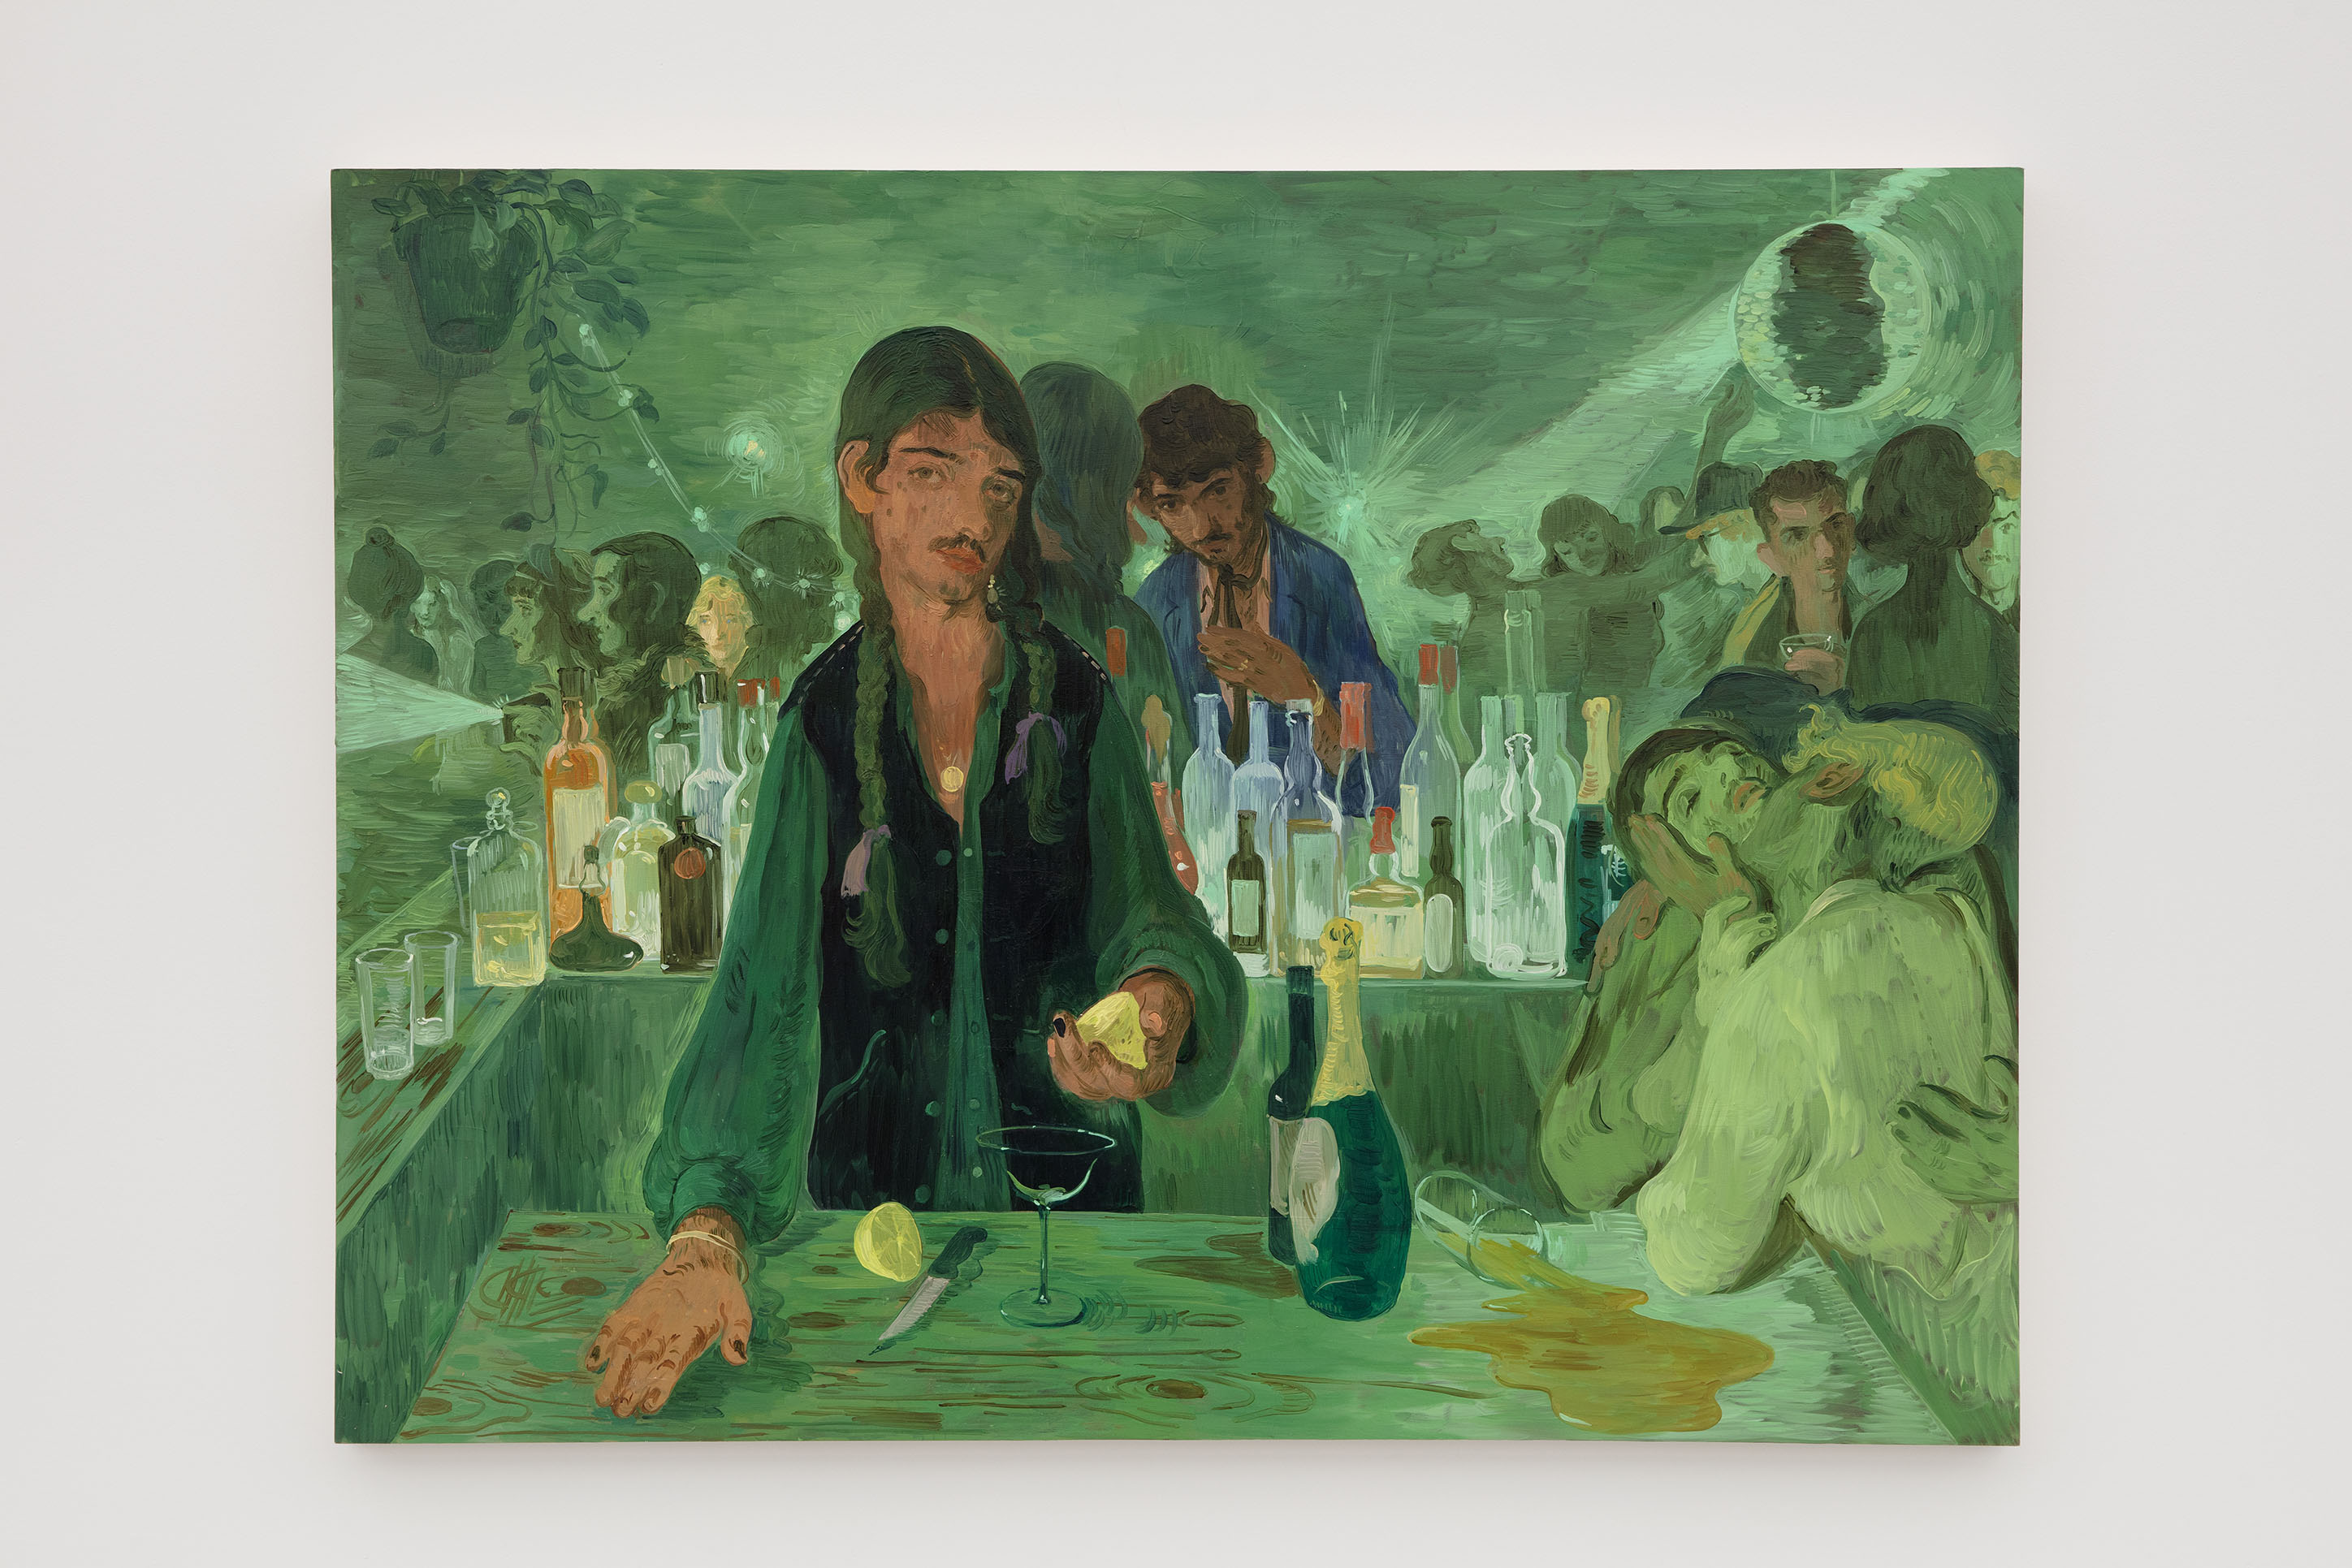 Salman Toor. "The Bar on East 13th", 2019. Oil on panel. 91.4 x 122 cm 